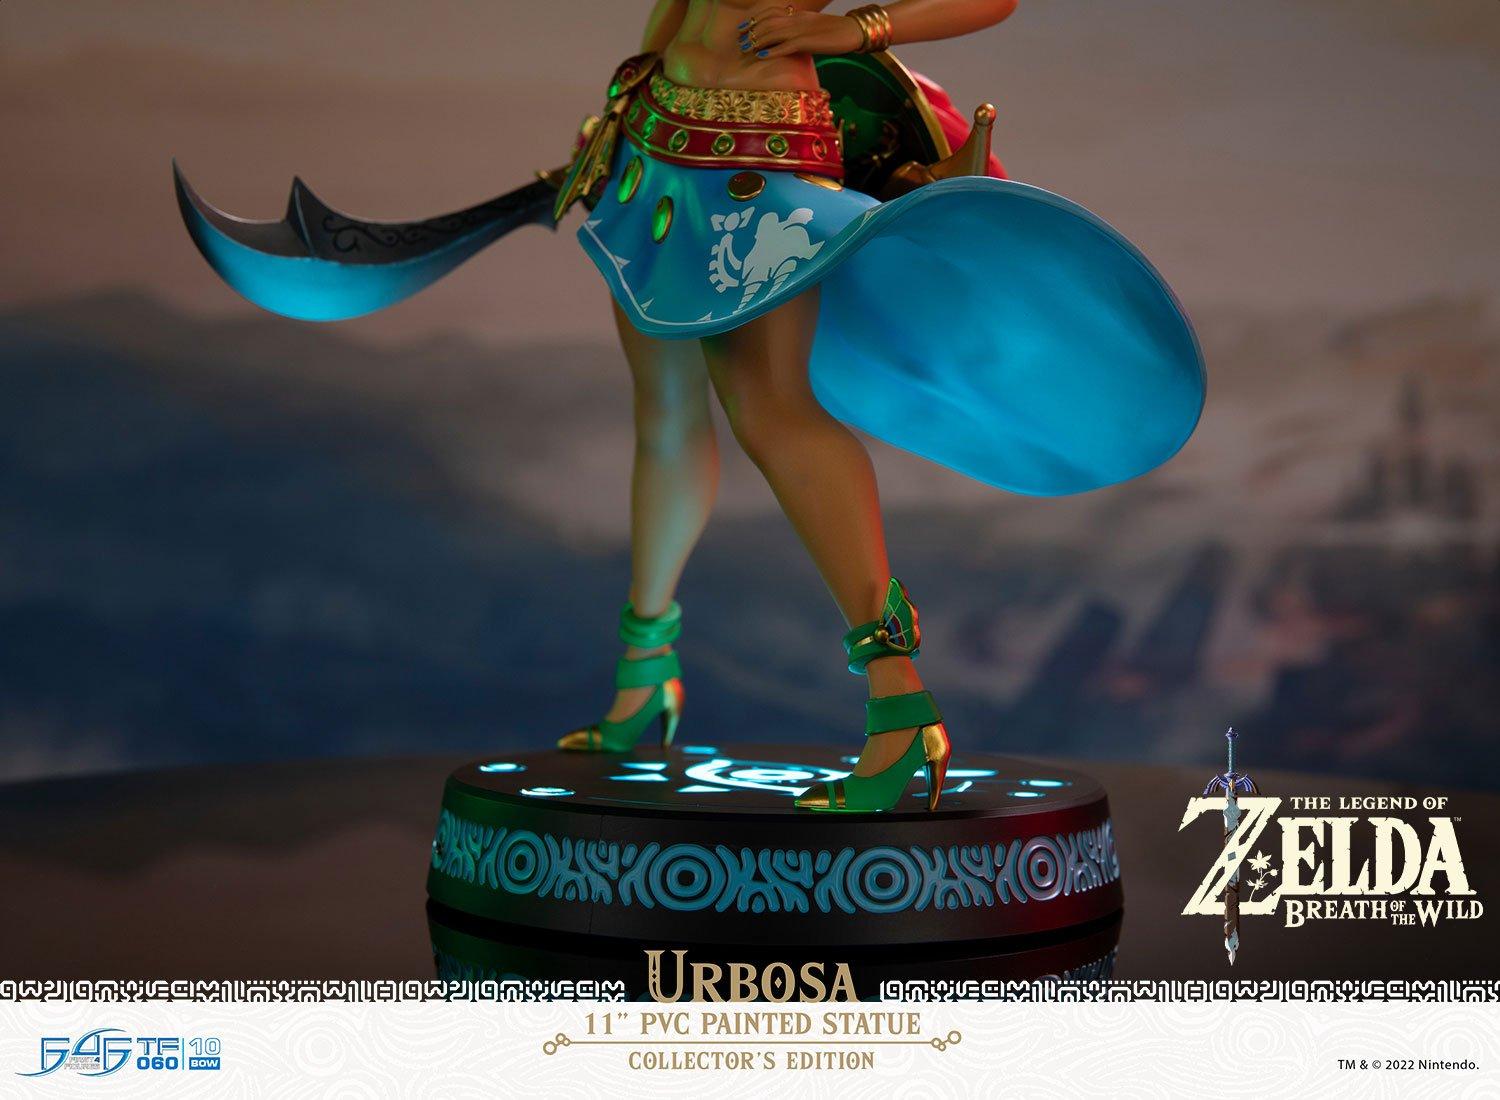 Link Legend Zelda Figure, Figure Zelda Breath Wild